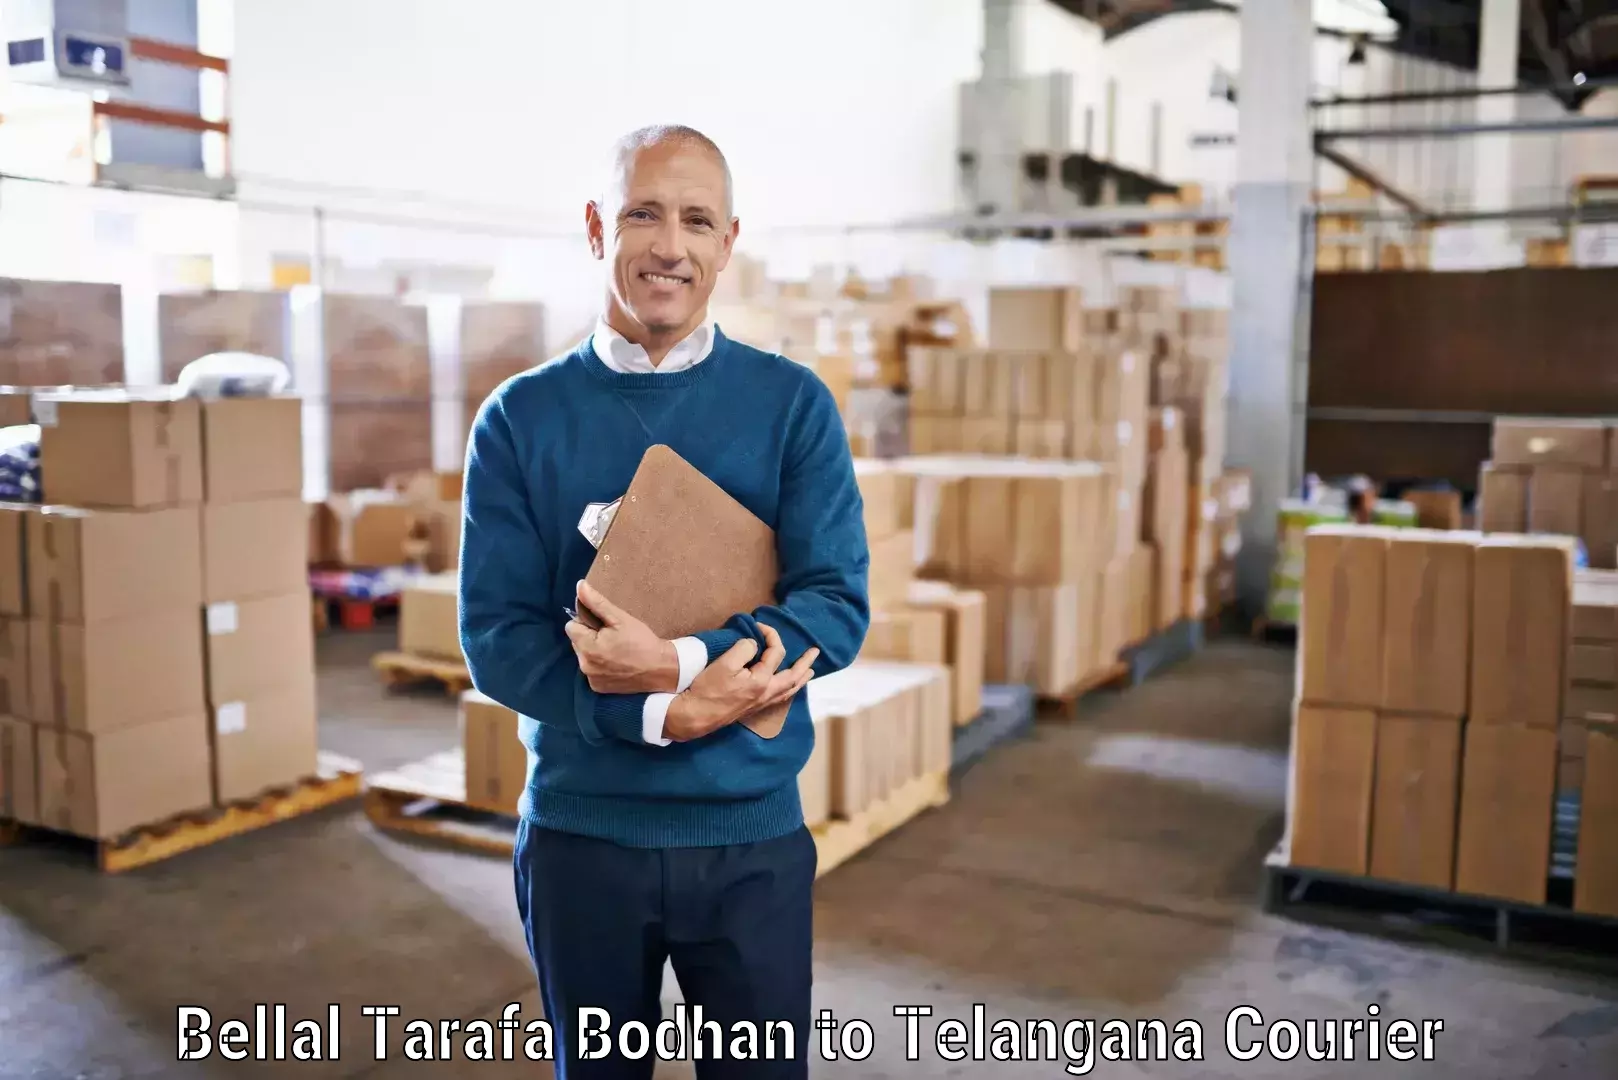 Premium courier solutions Bellal Tarafa Bodhan to Manuguru